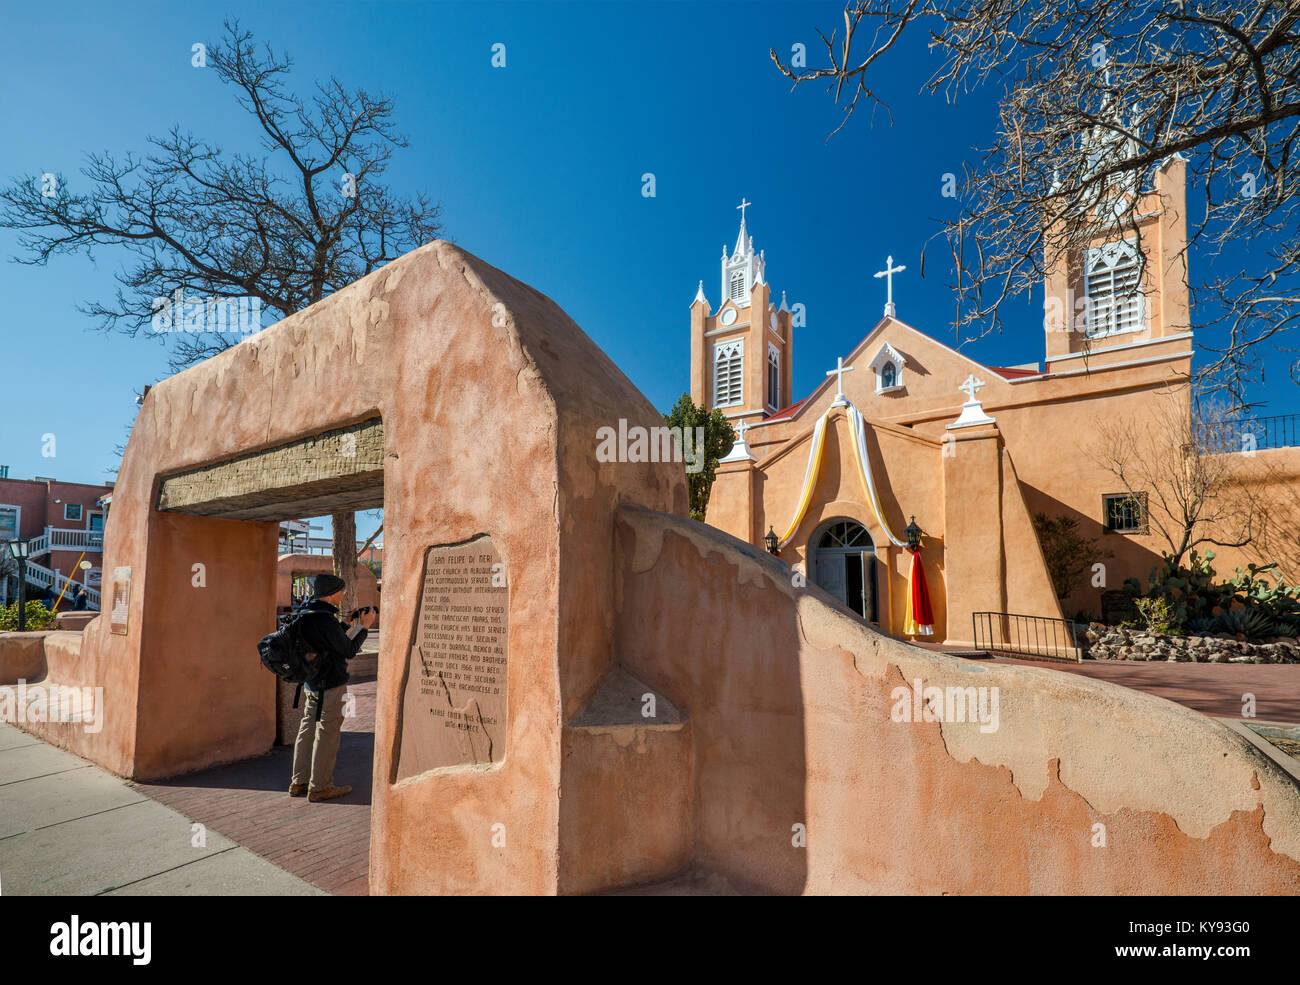 Adobe gate to San Felipe de Neri Church, Old Town Plaza, Albuquerque, New Mexico, USA Stock Photo